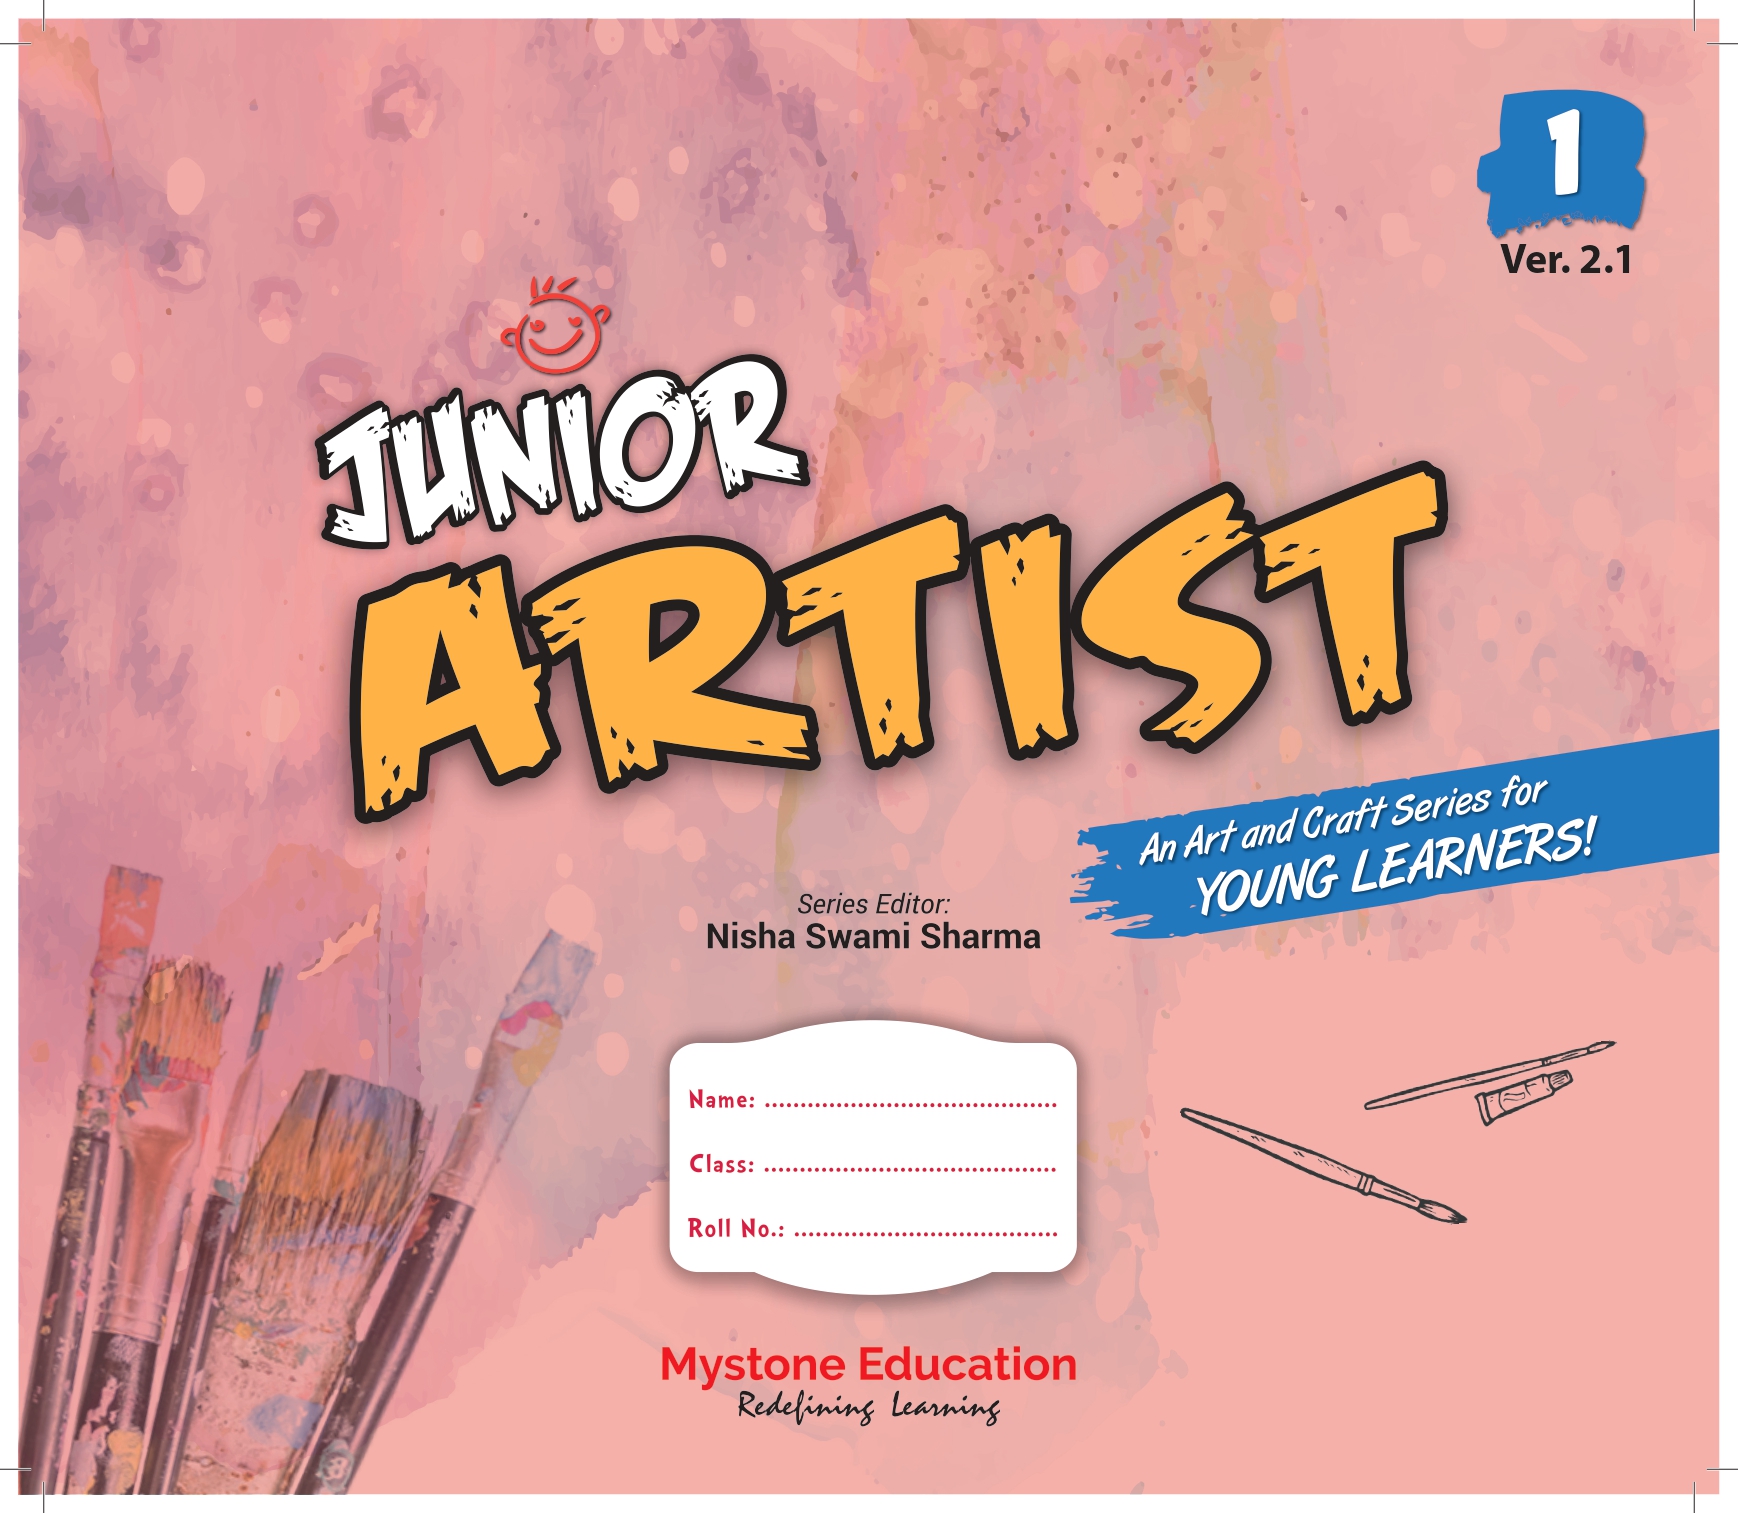 Junior Artist Class 1 Ver 2.1